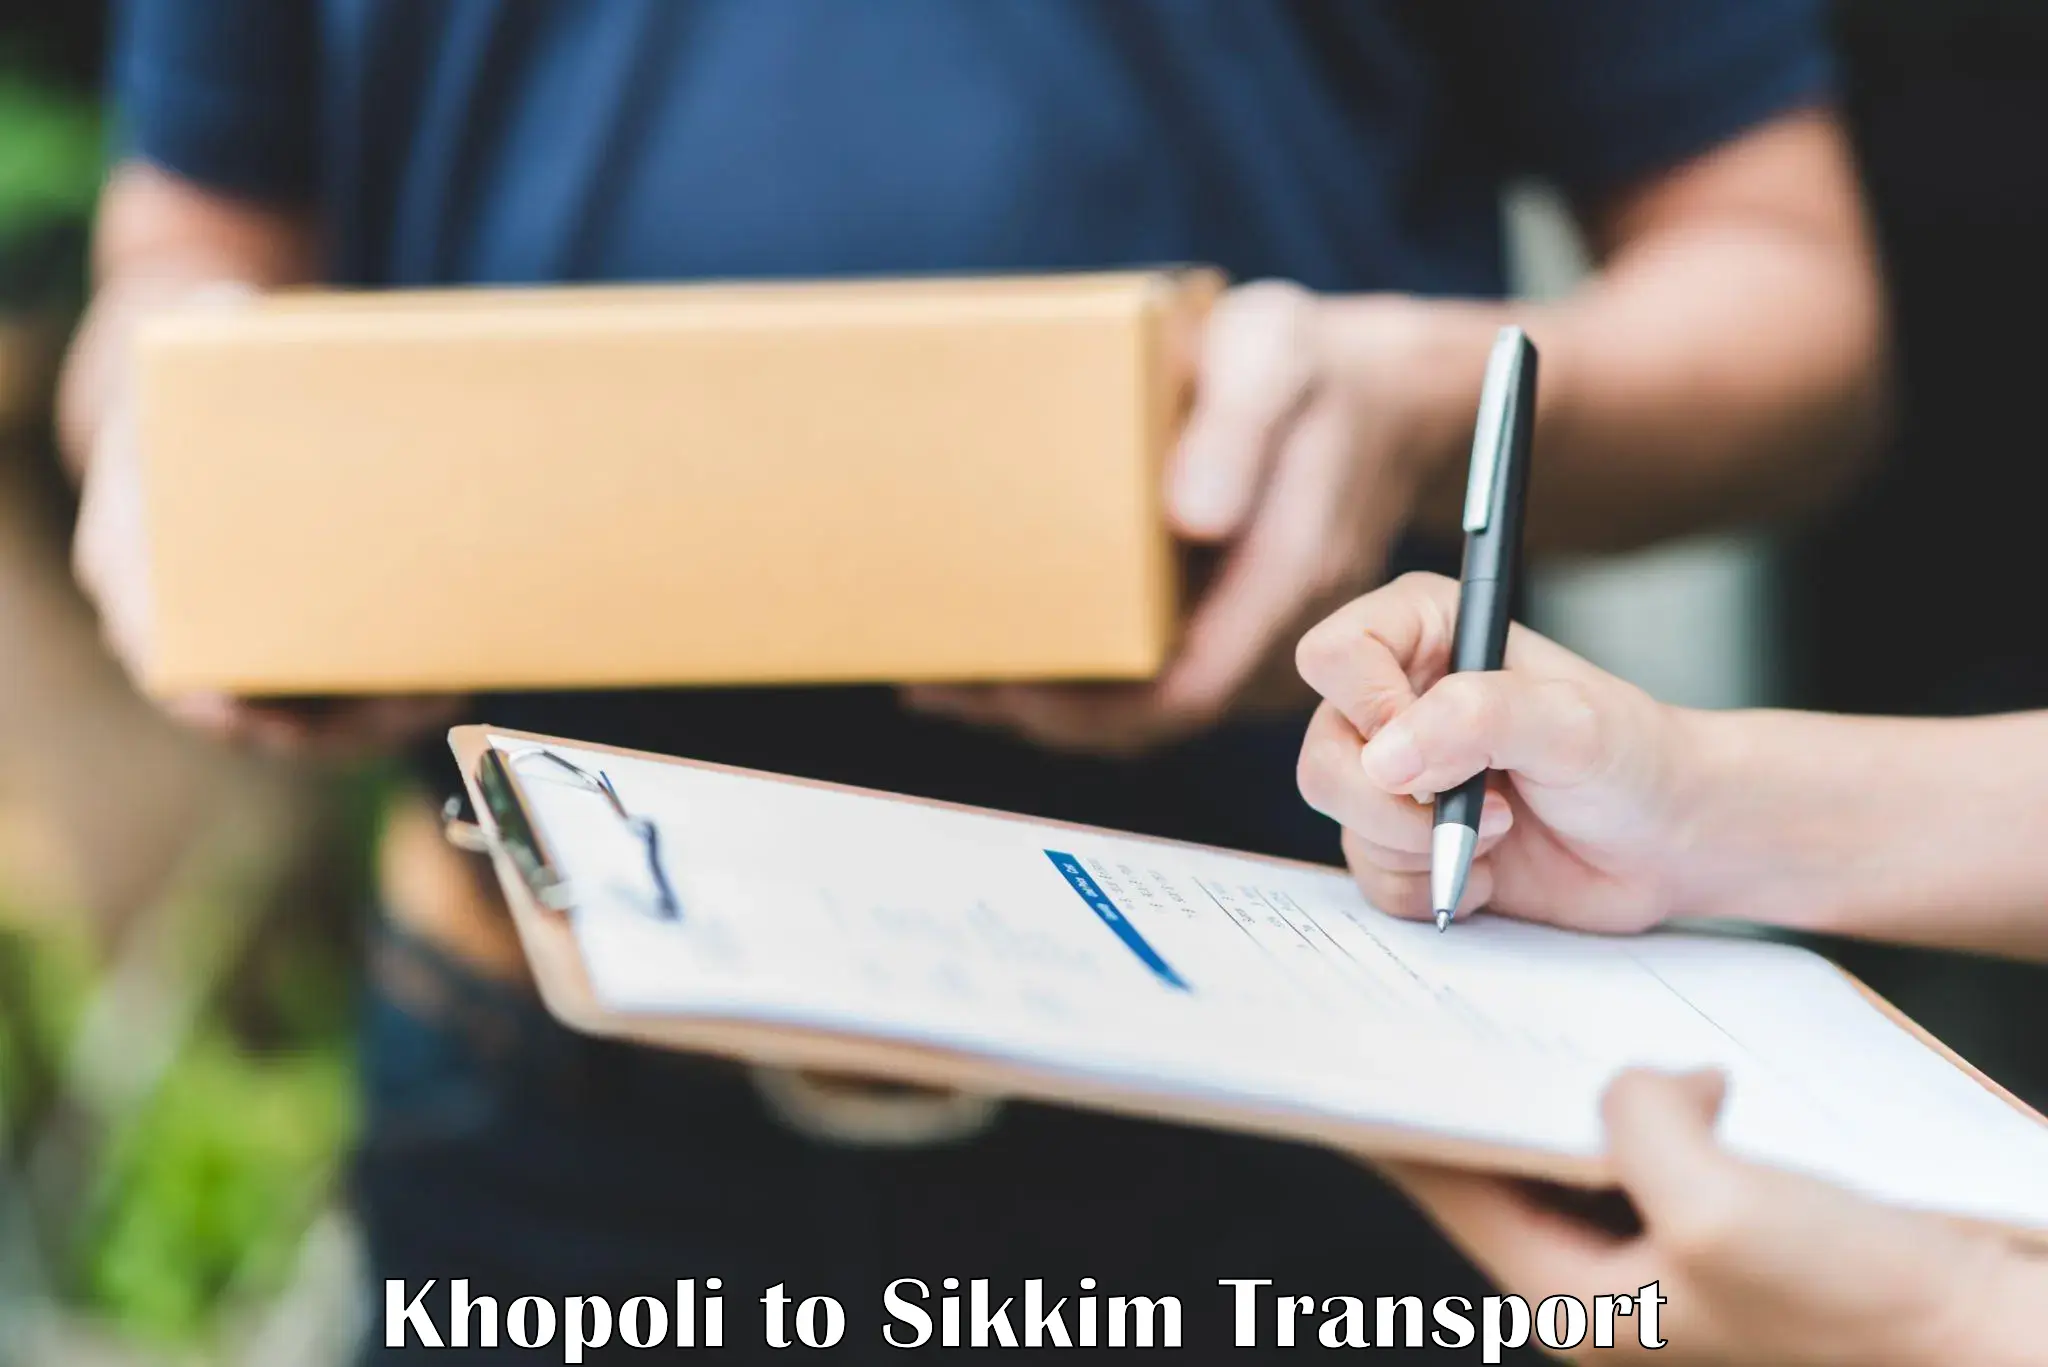 Nearby transport service Khopoli to Geyzing